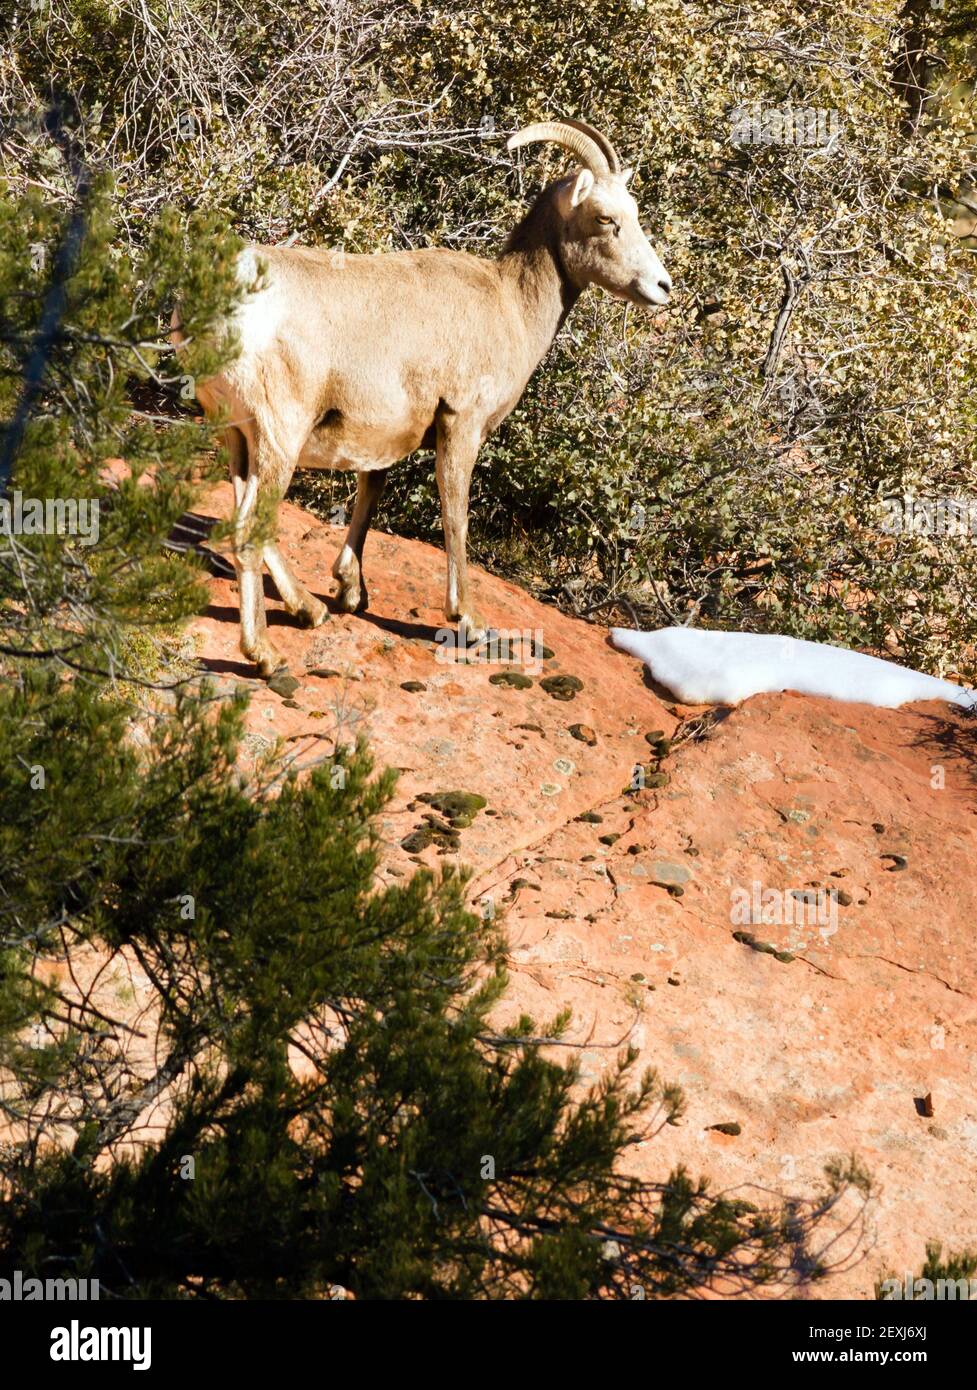 Animal sauvage, la chèvre de montagne alpin bande Protection Sentry Forêt de flanc Banque D'Images